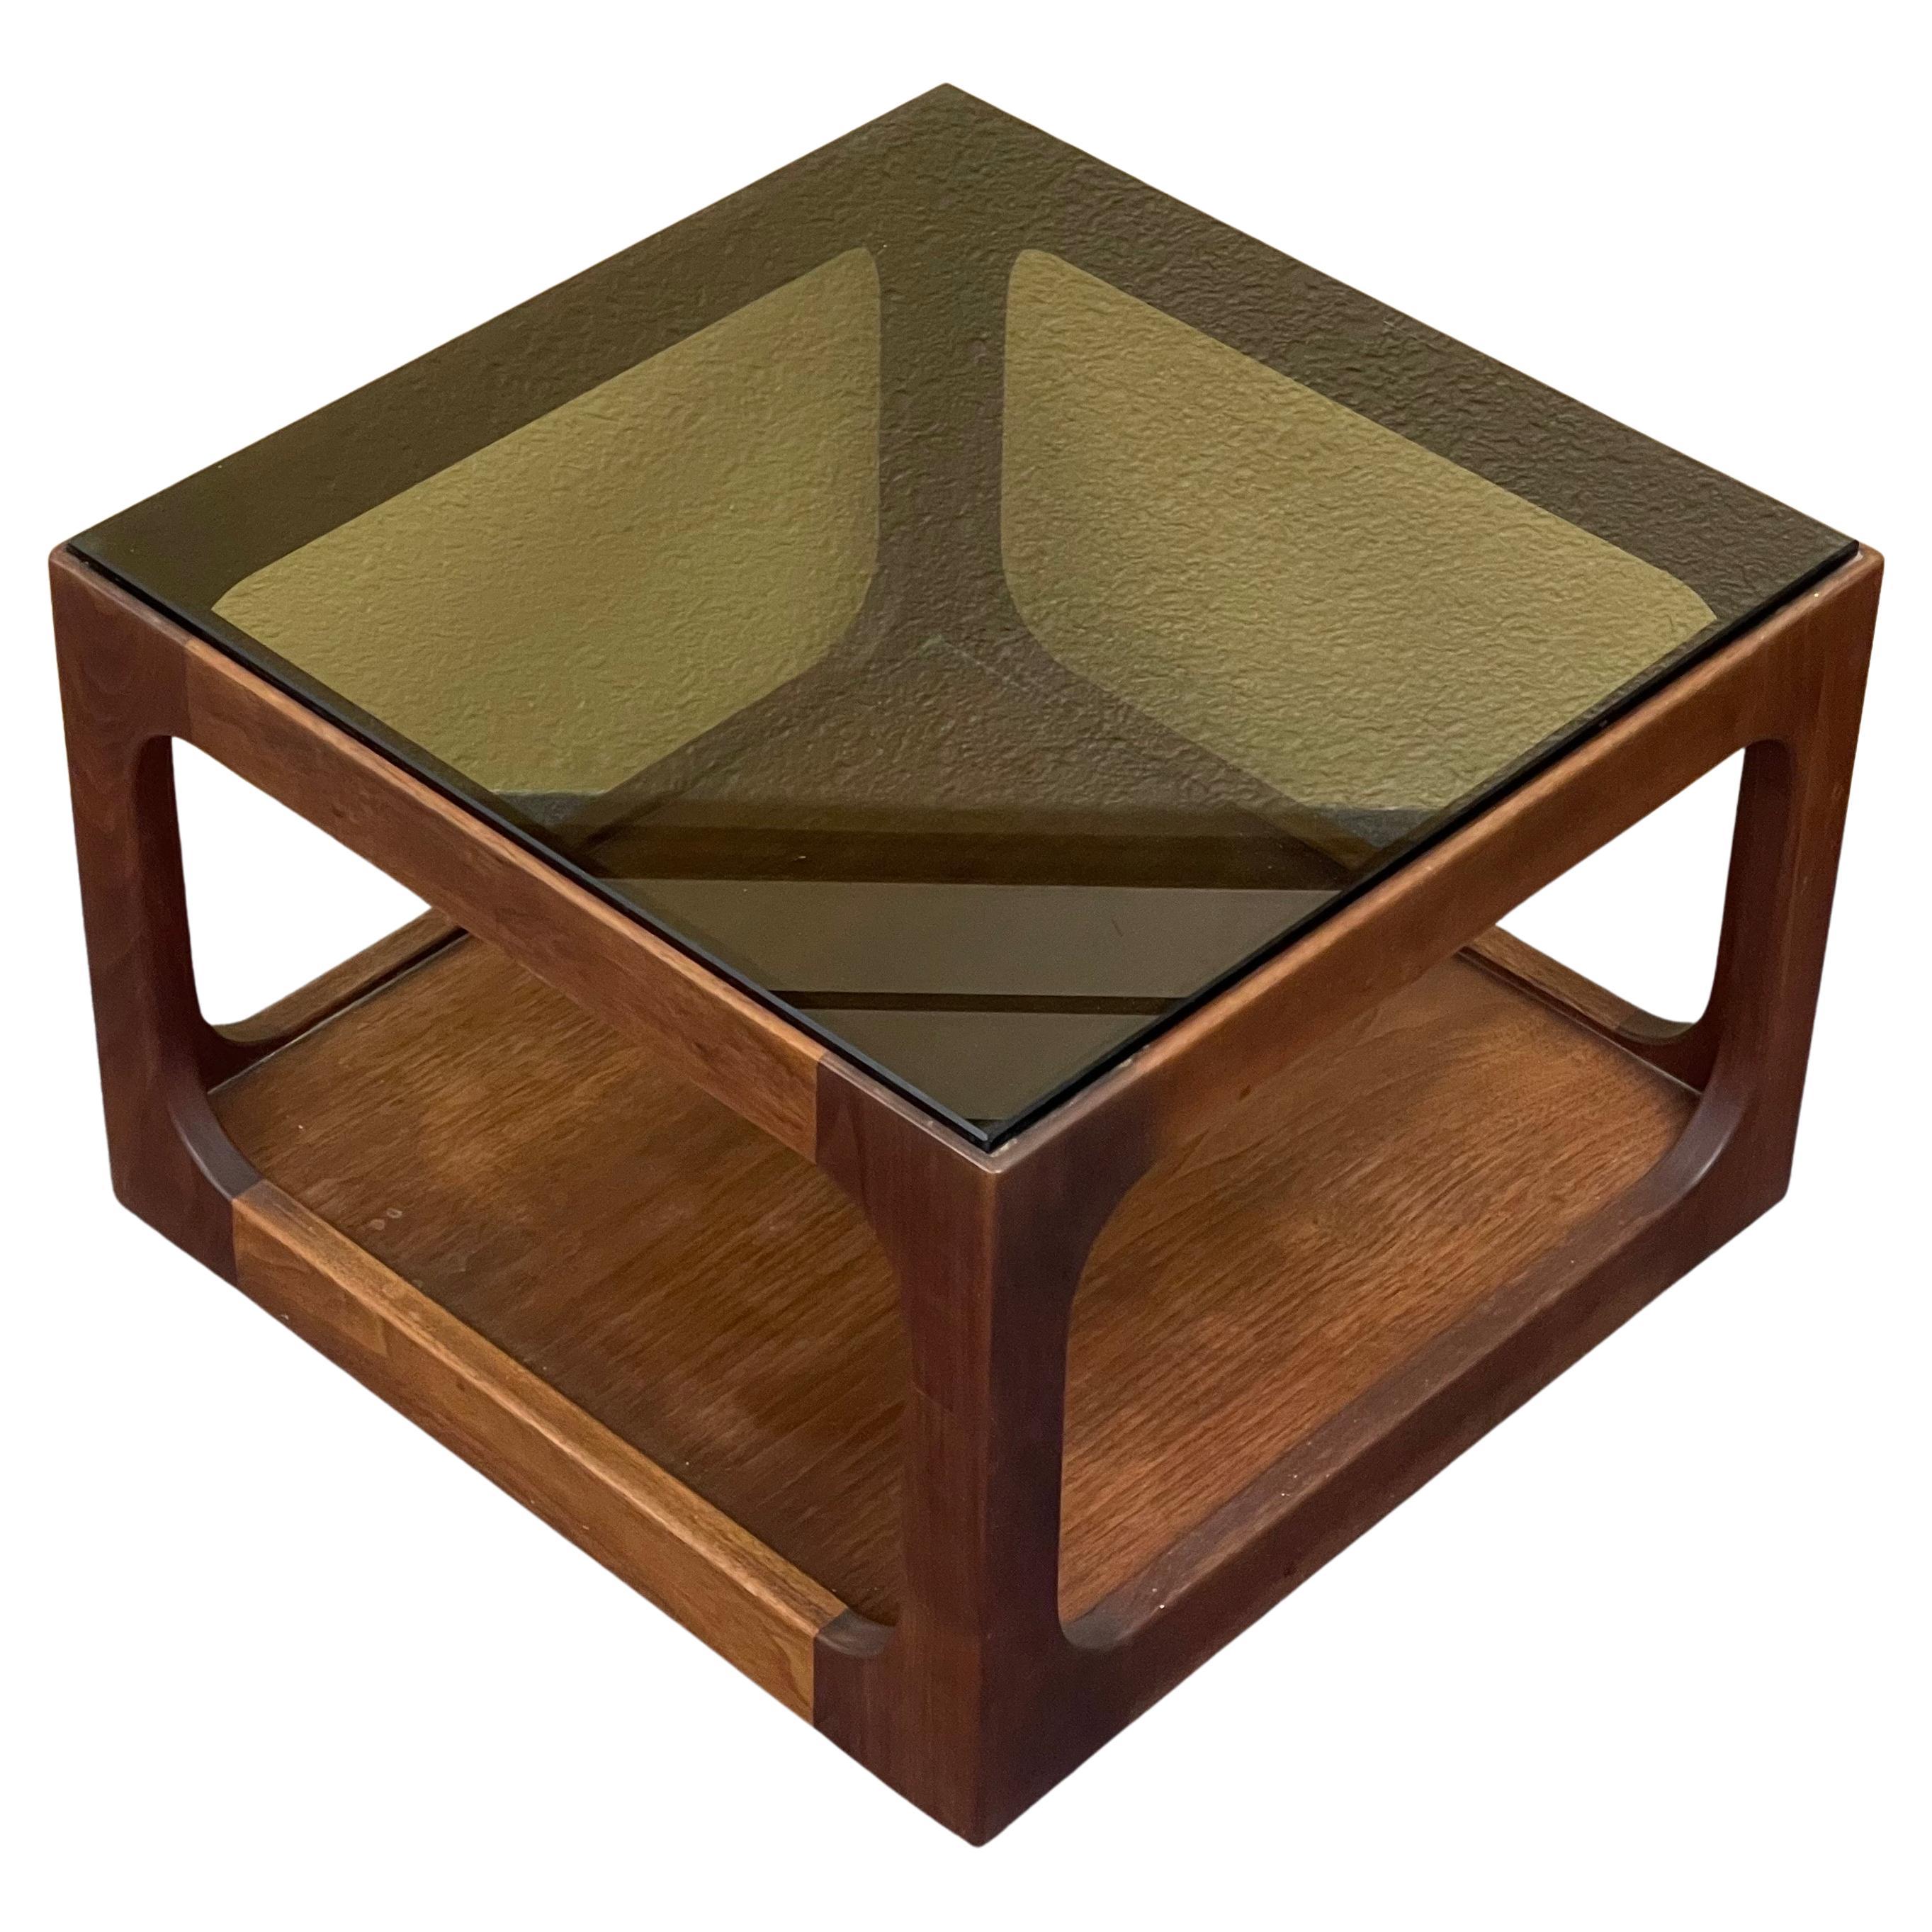 Einzelner Abstell-/Akzenttisch aus Rauchglas mit Nussbaumgestell, entworfen von John Keal für Brown Saltman, ca. 1970er Jahre.  Der Tisch ist in sehr gutem Vintage-Zustand, misst 18